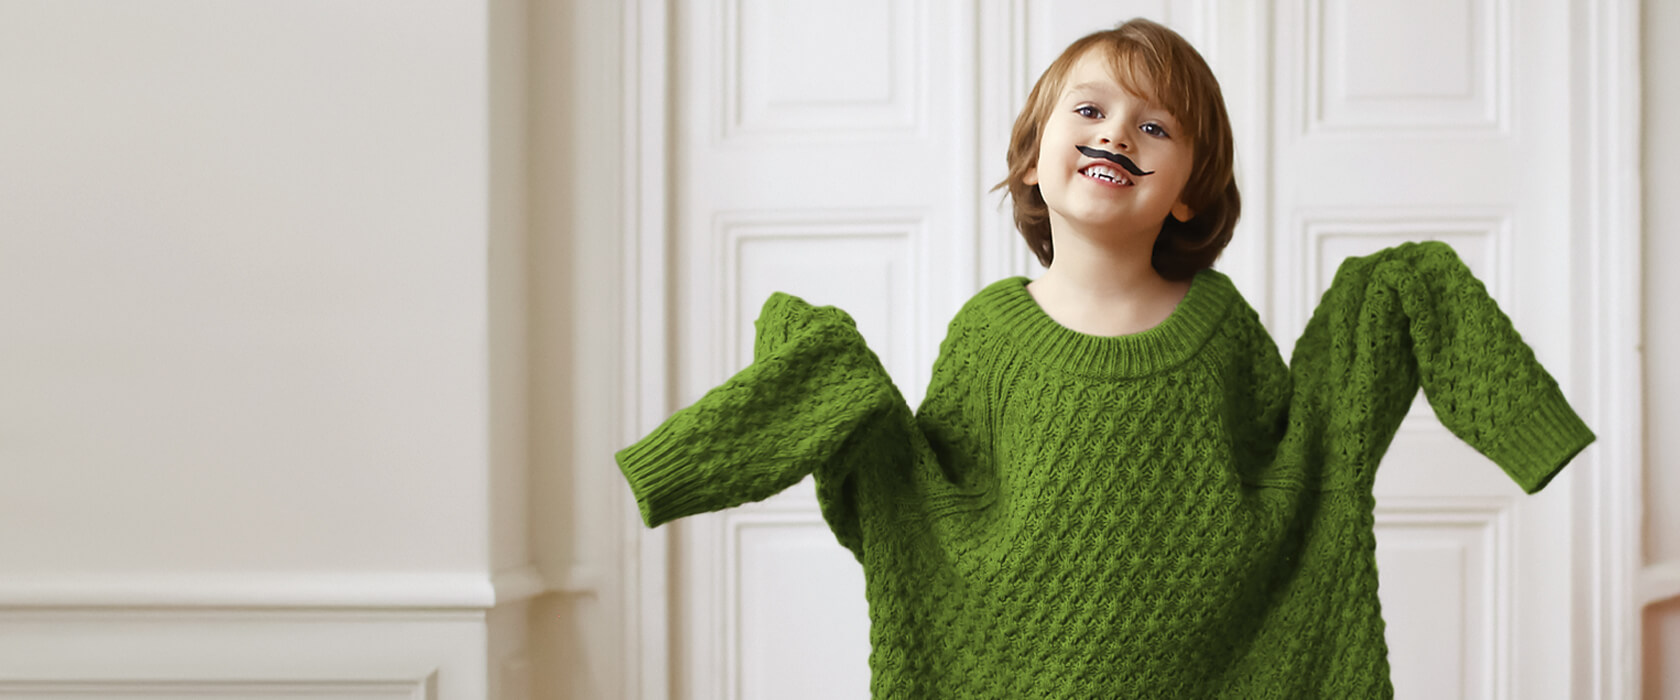 Symbolbild Kind mit zu großem Pullover